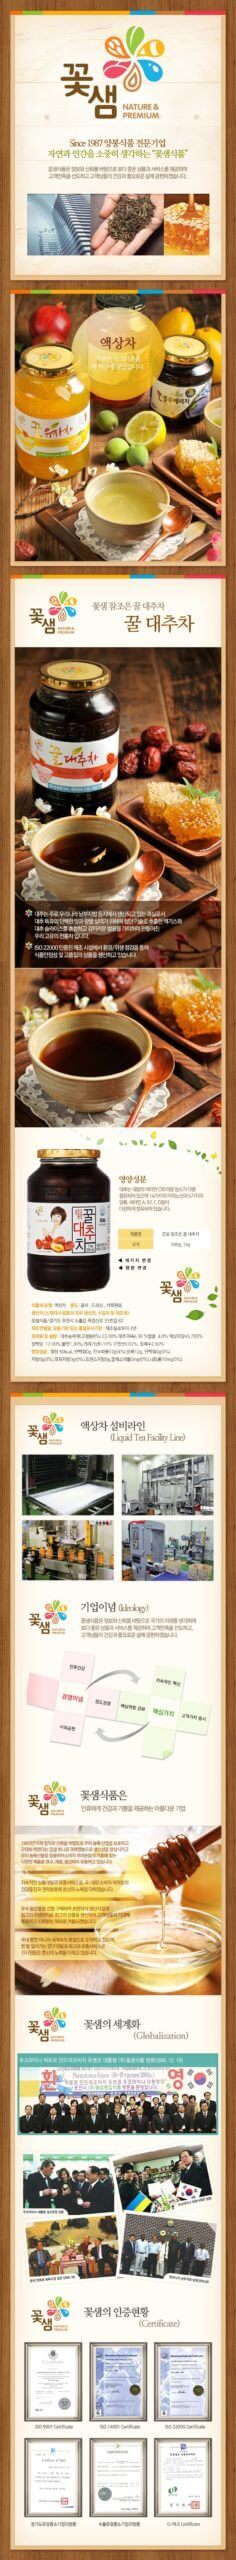 韓國食品-[꽃샘] 꿀대추차 1kg